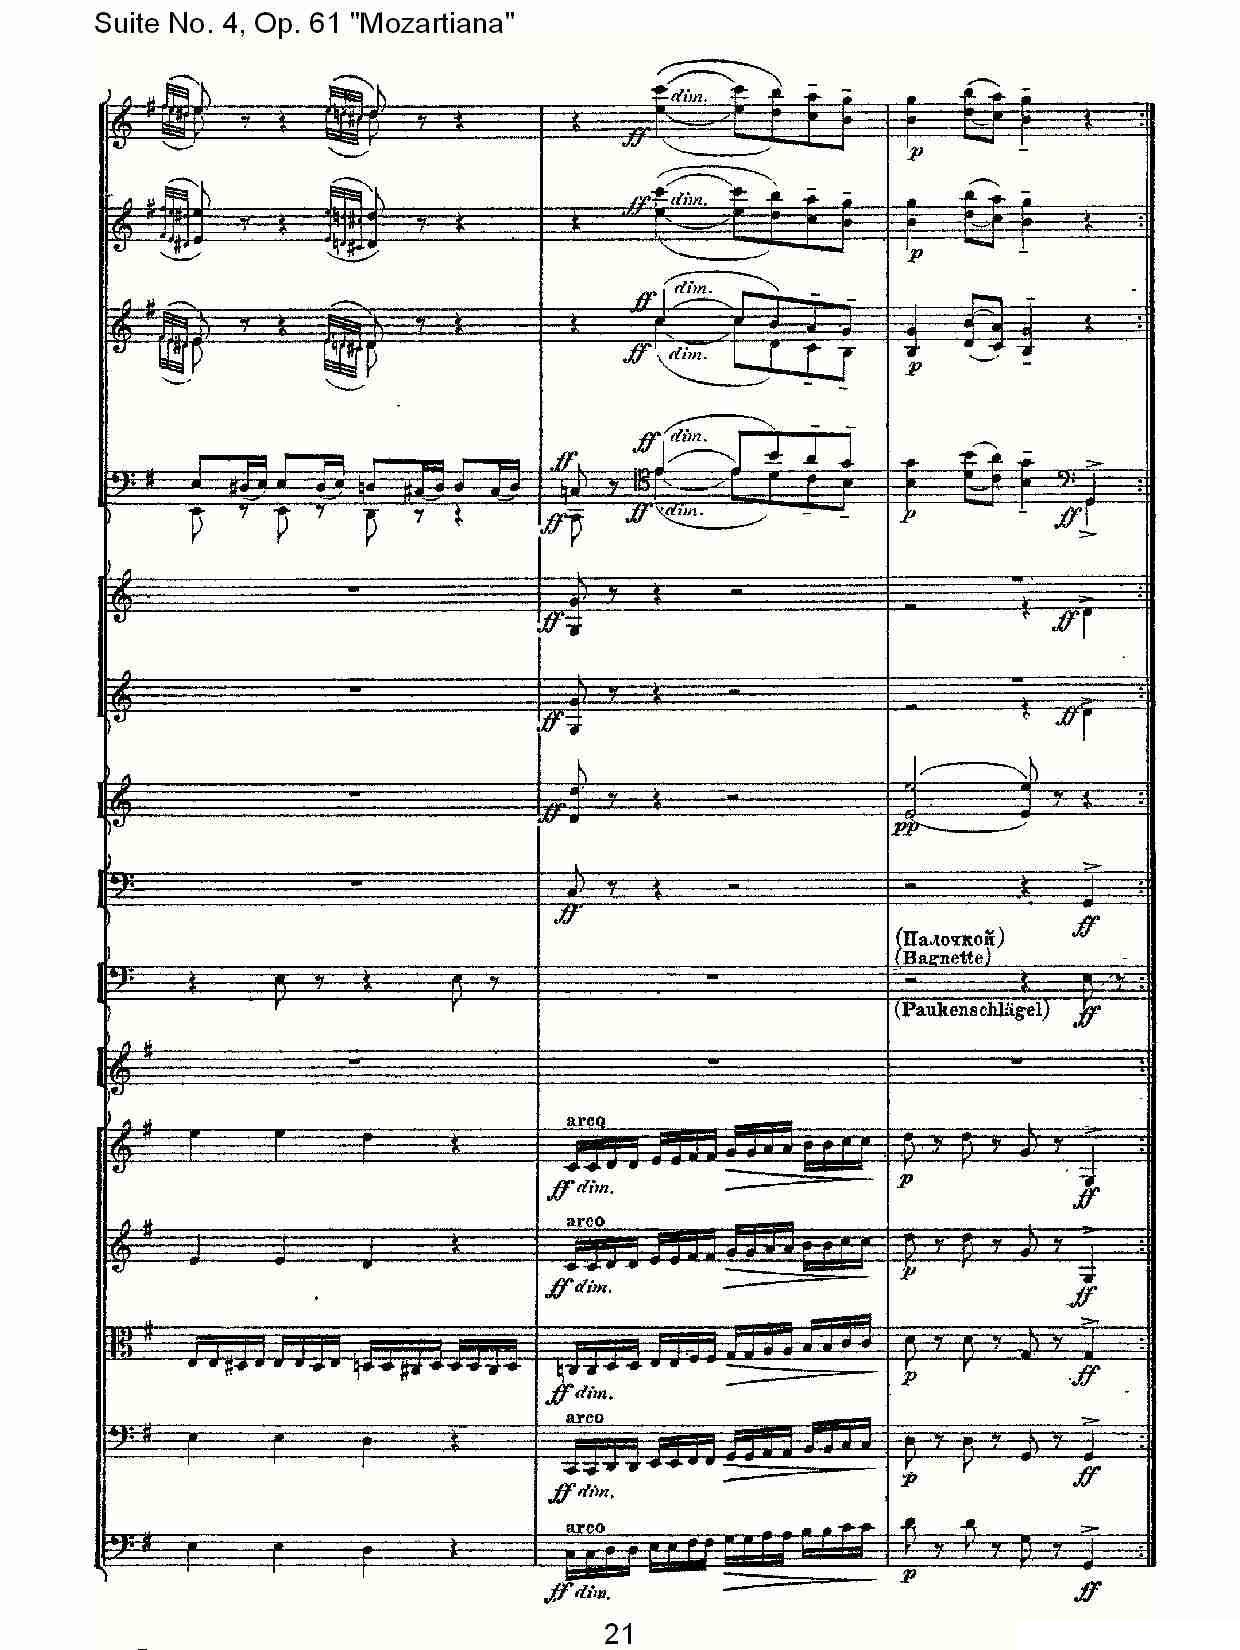 Suite No. 4, Op.61其它曲谱（图21）